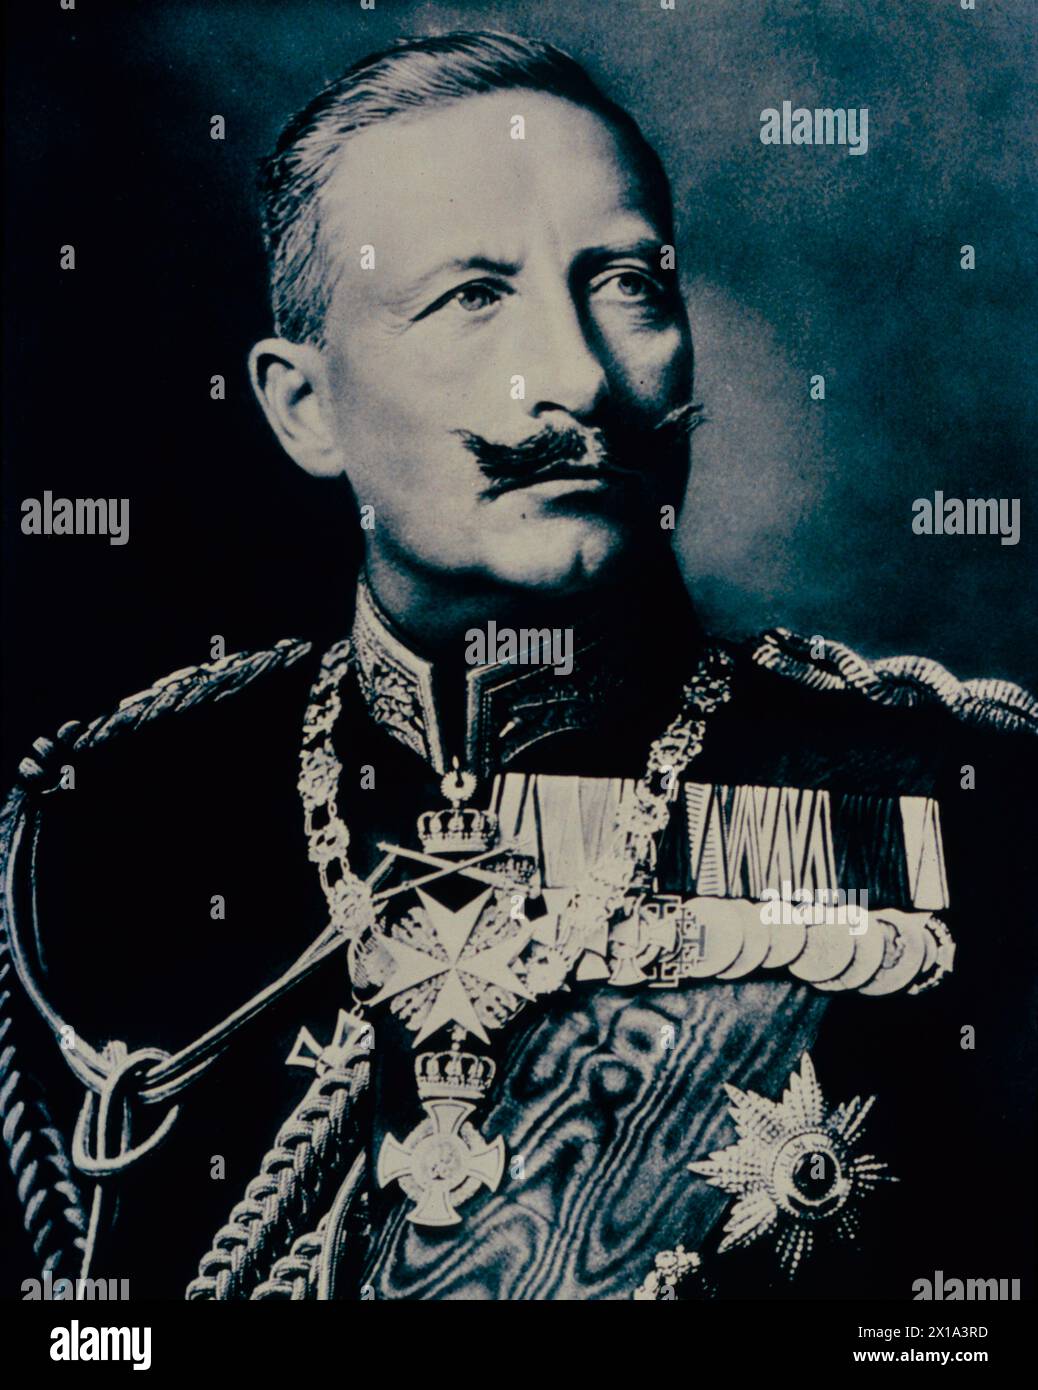 Portrait de Guillaume II, empereur d'Allemagne, années 1890 Banque D'Images